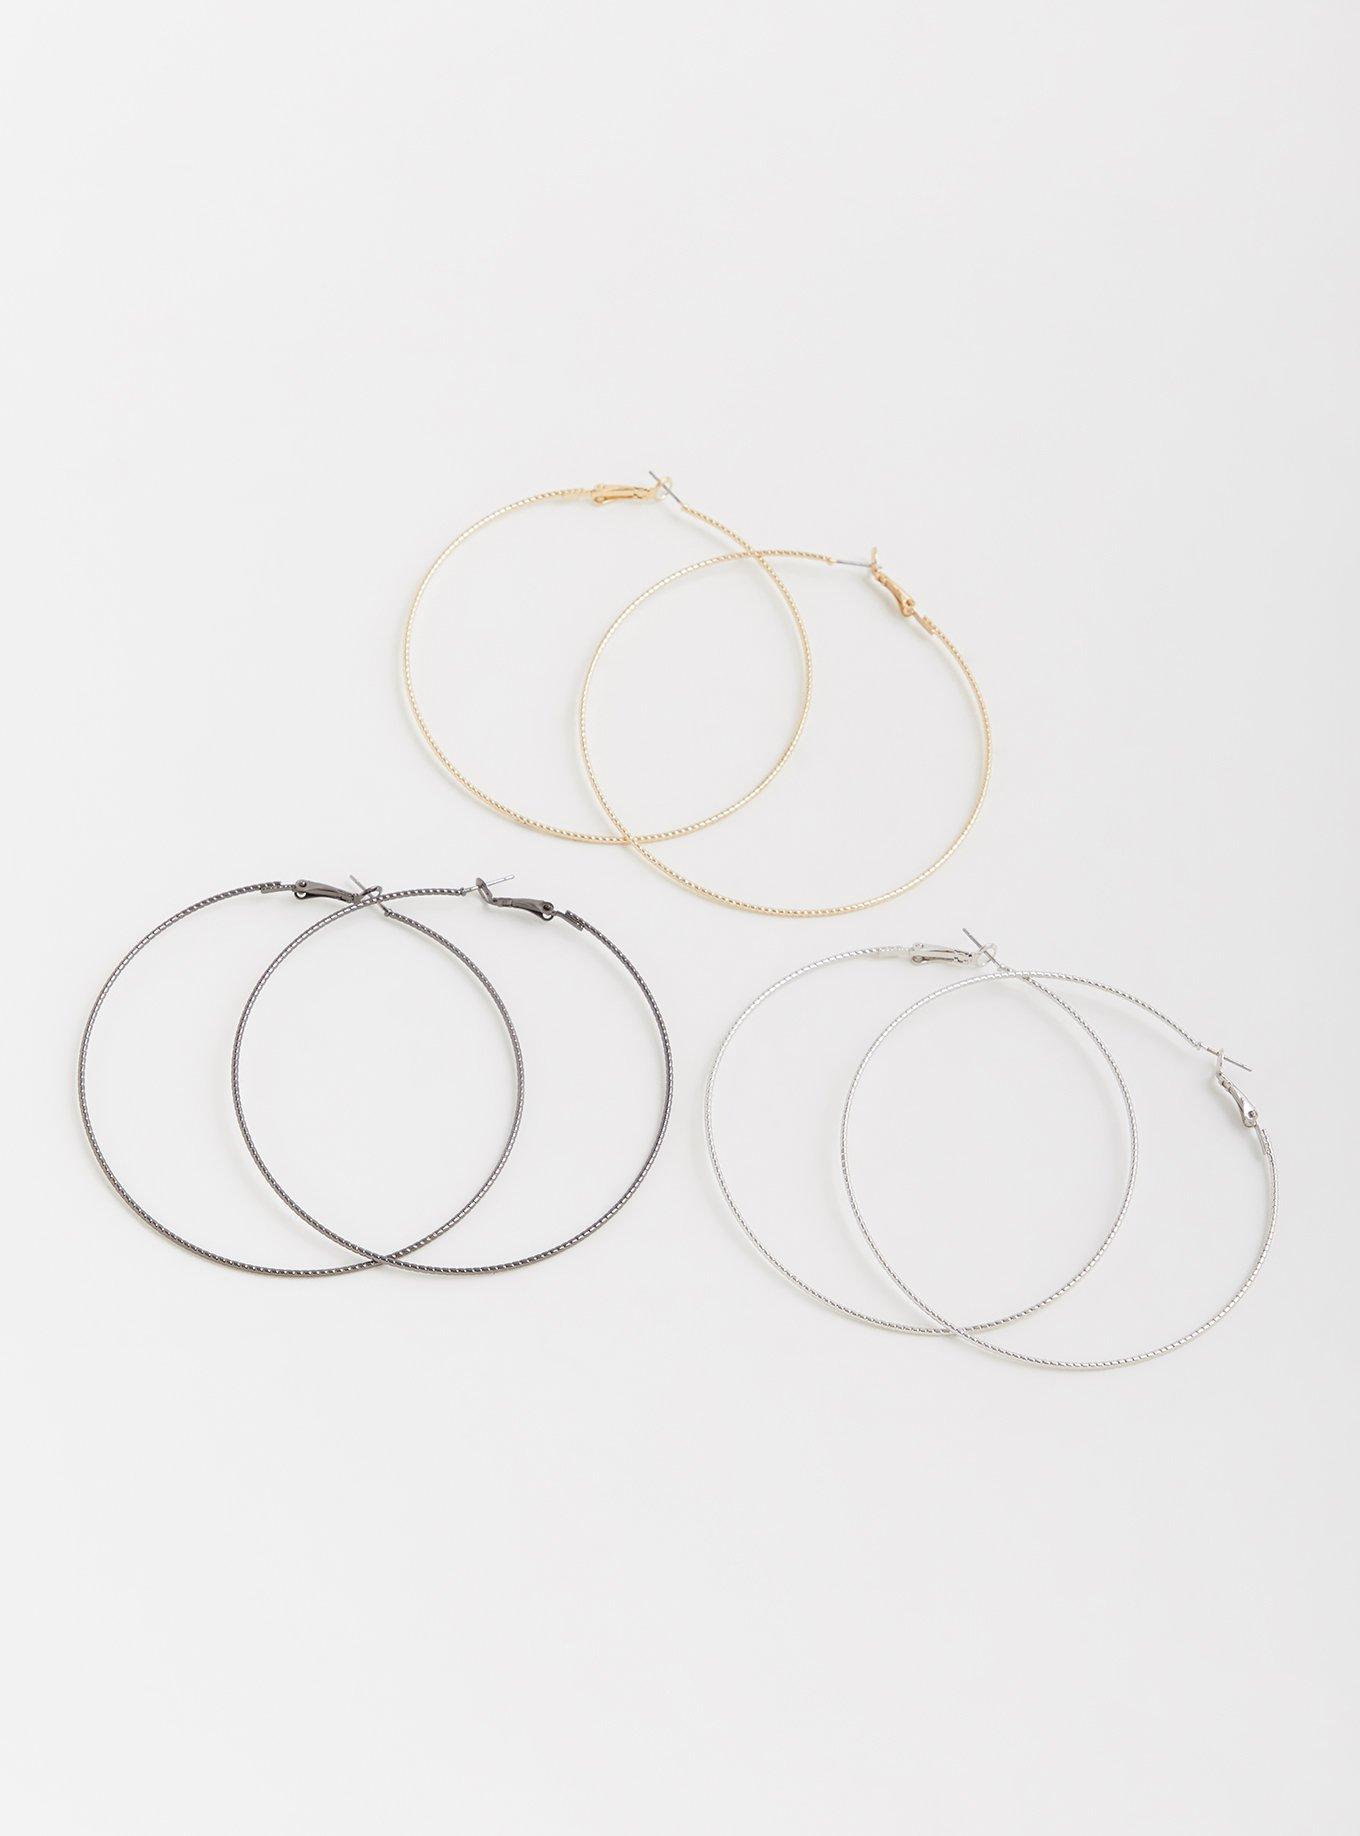 Plus Size - Multi Hoop Earrings Set - Set of 3 - Torrid